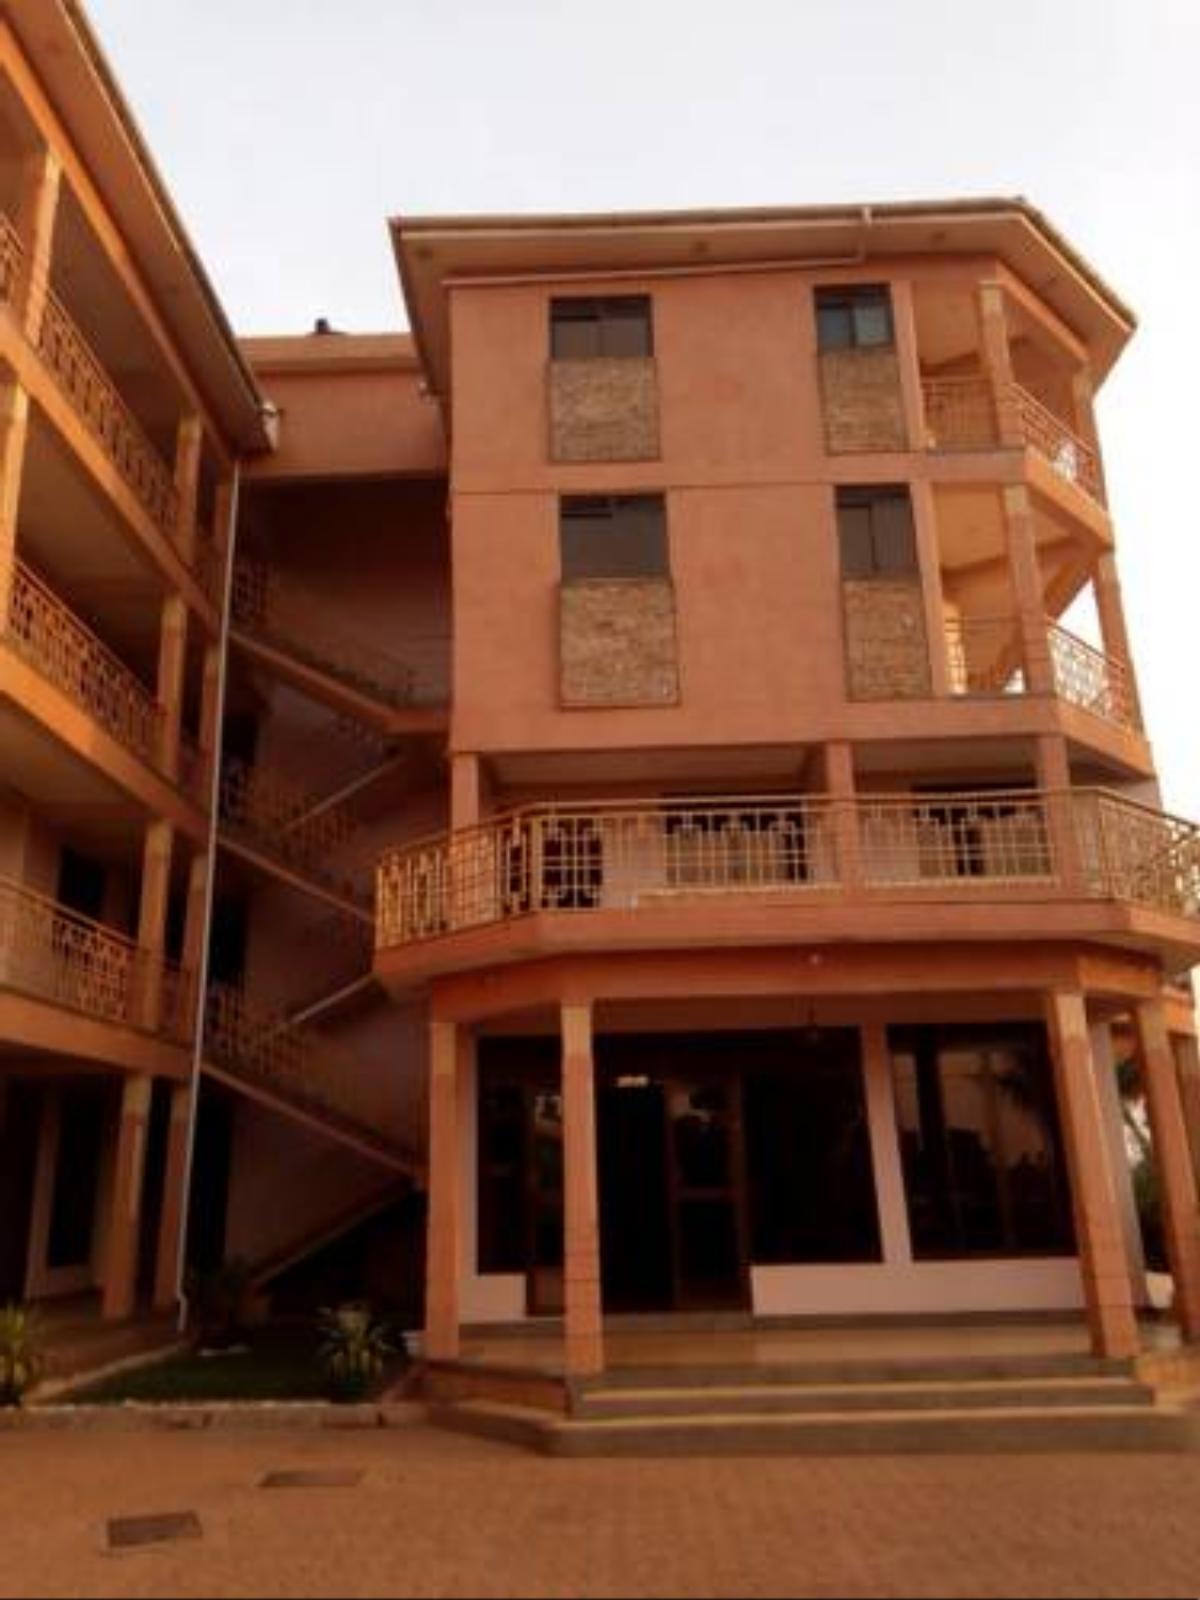 Ubuntu Palace Hotel Hotel Bulago Island Uganda